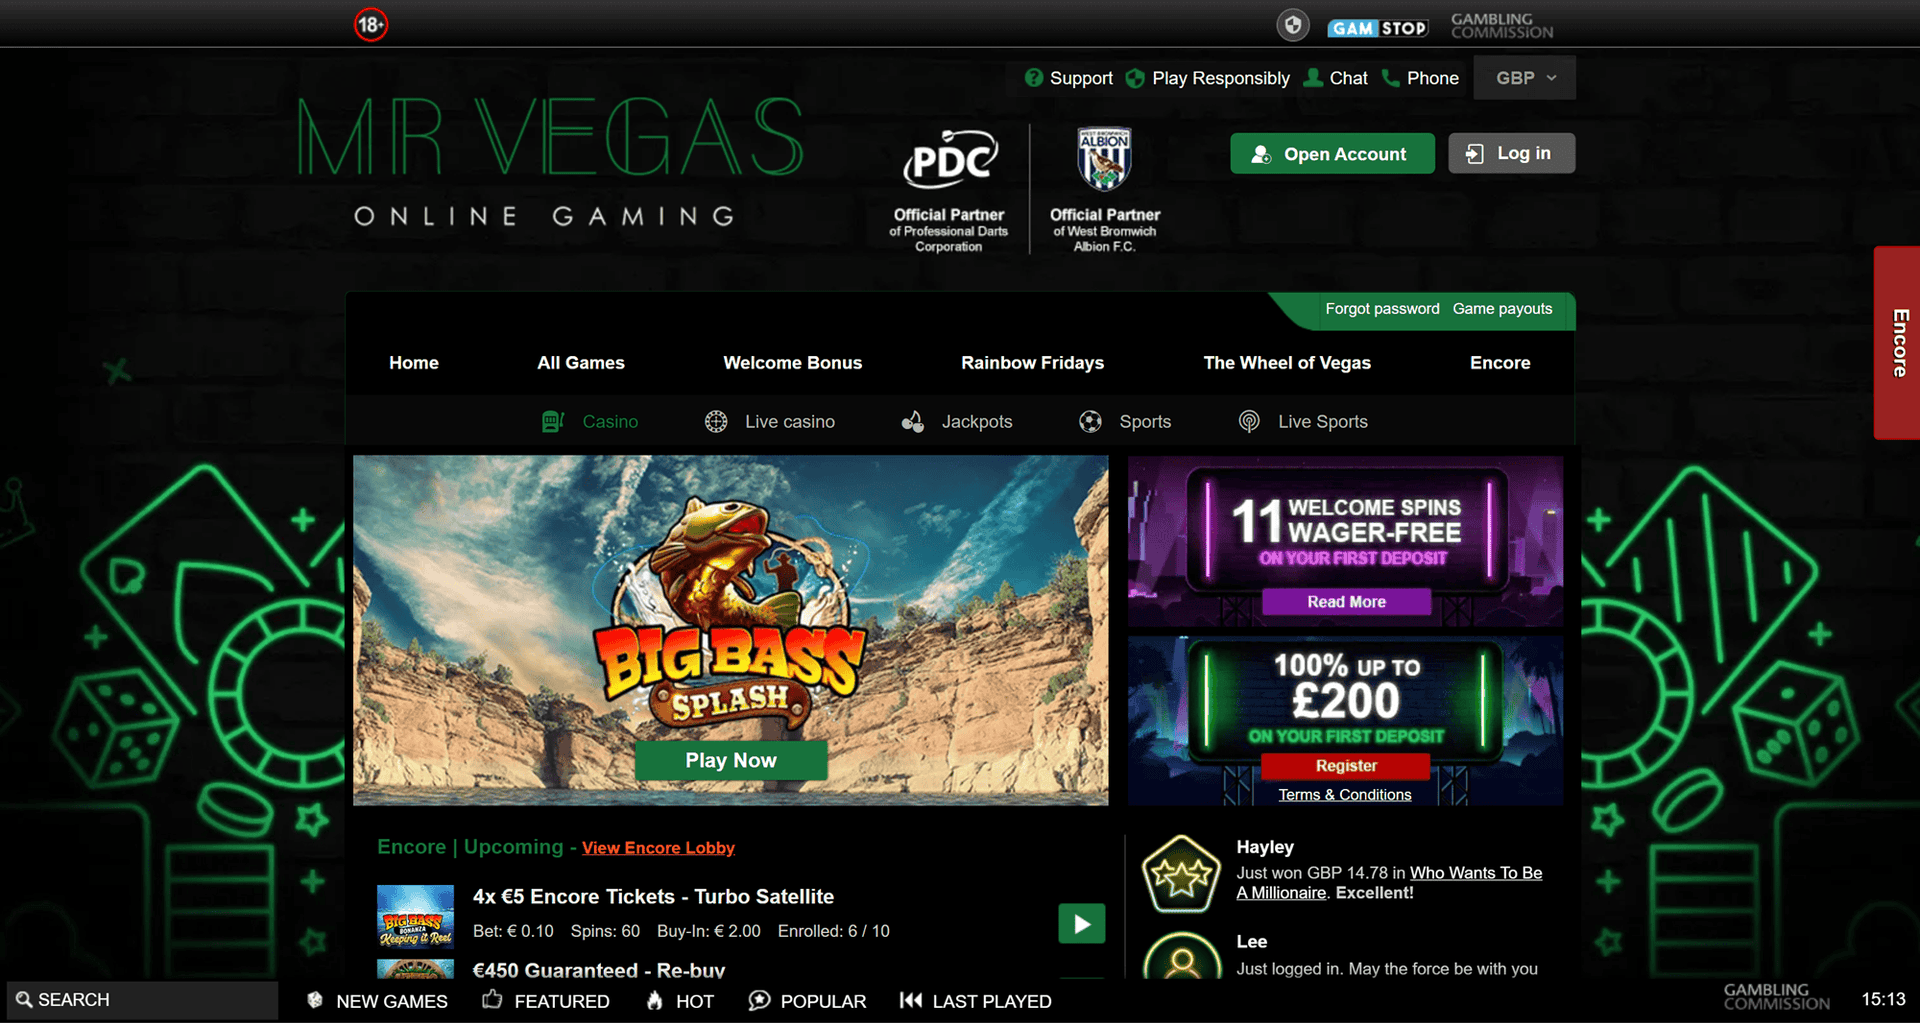 Sitios hermanos de Mr Vegas - Los mejores casinos del Reino Unido como Mr Vegas